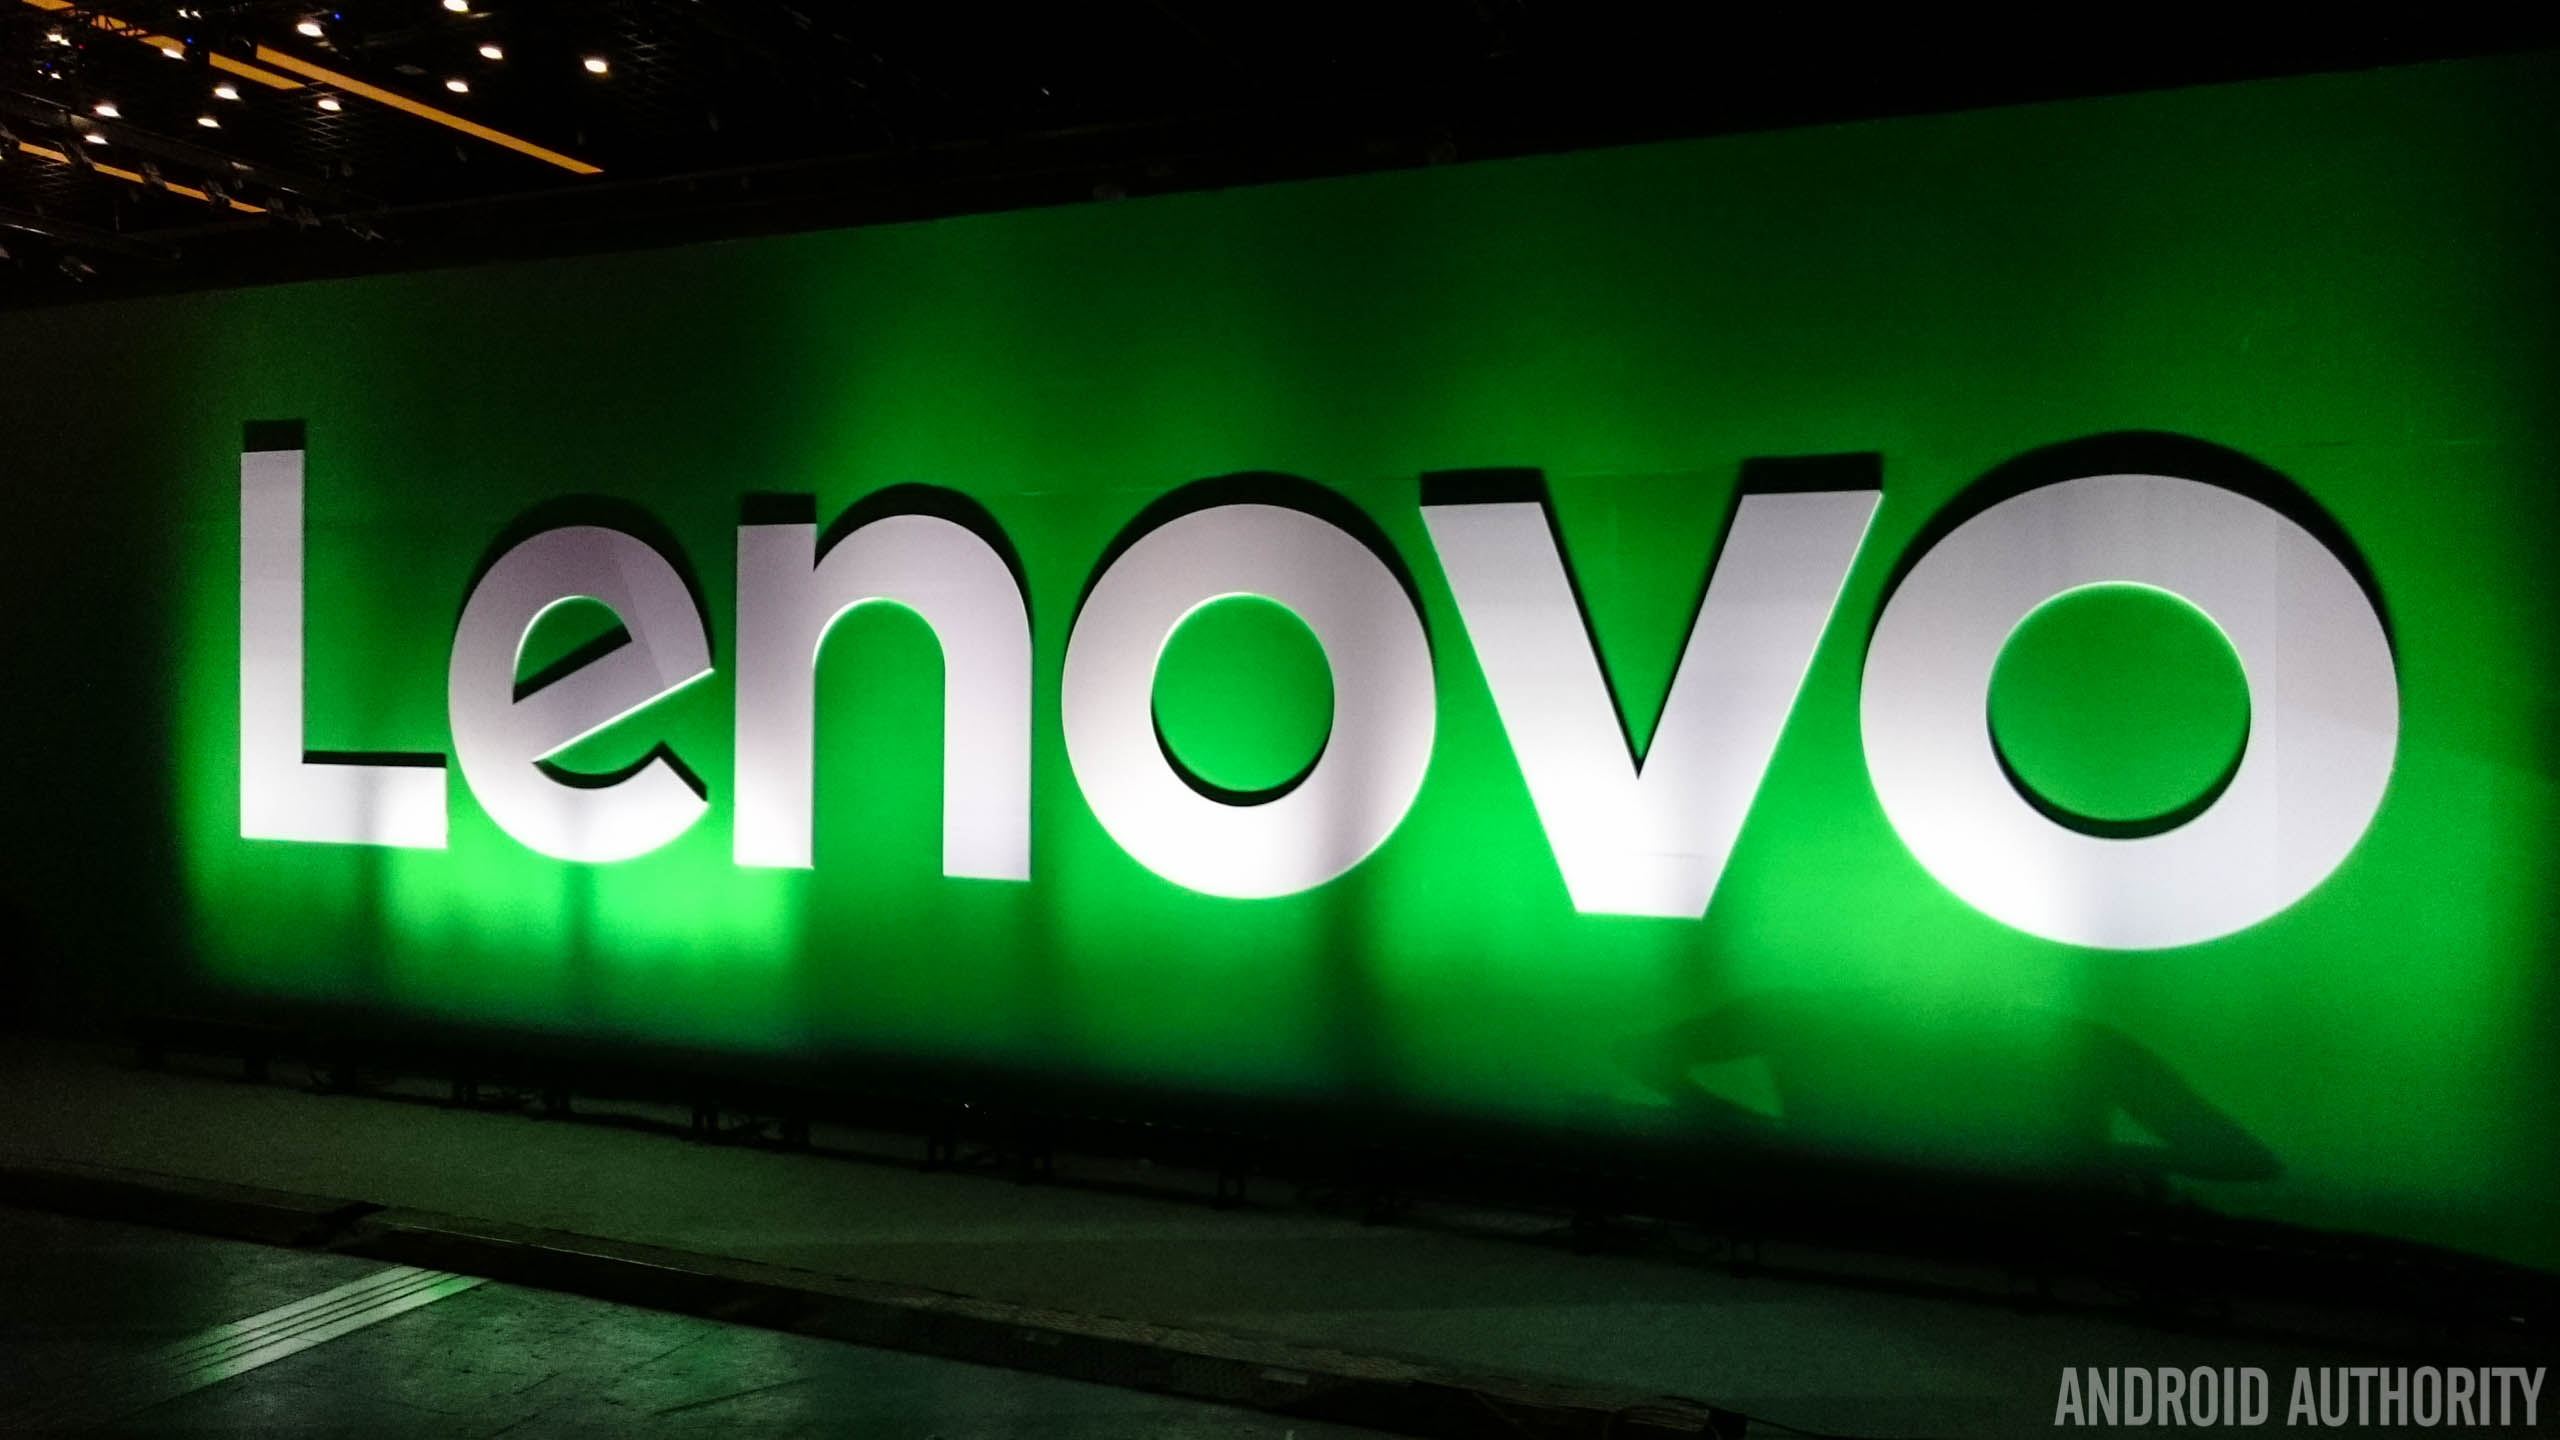 Lenovo TechWorld 2015 - the highlights